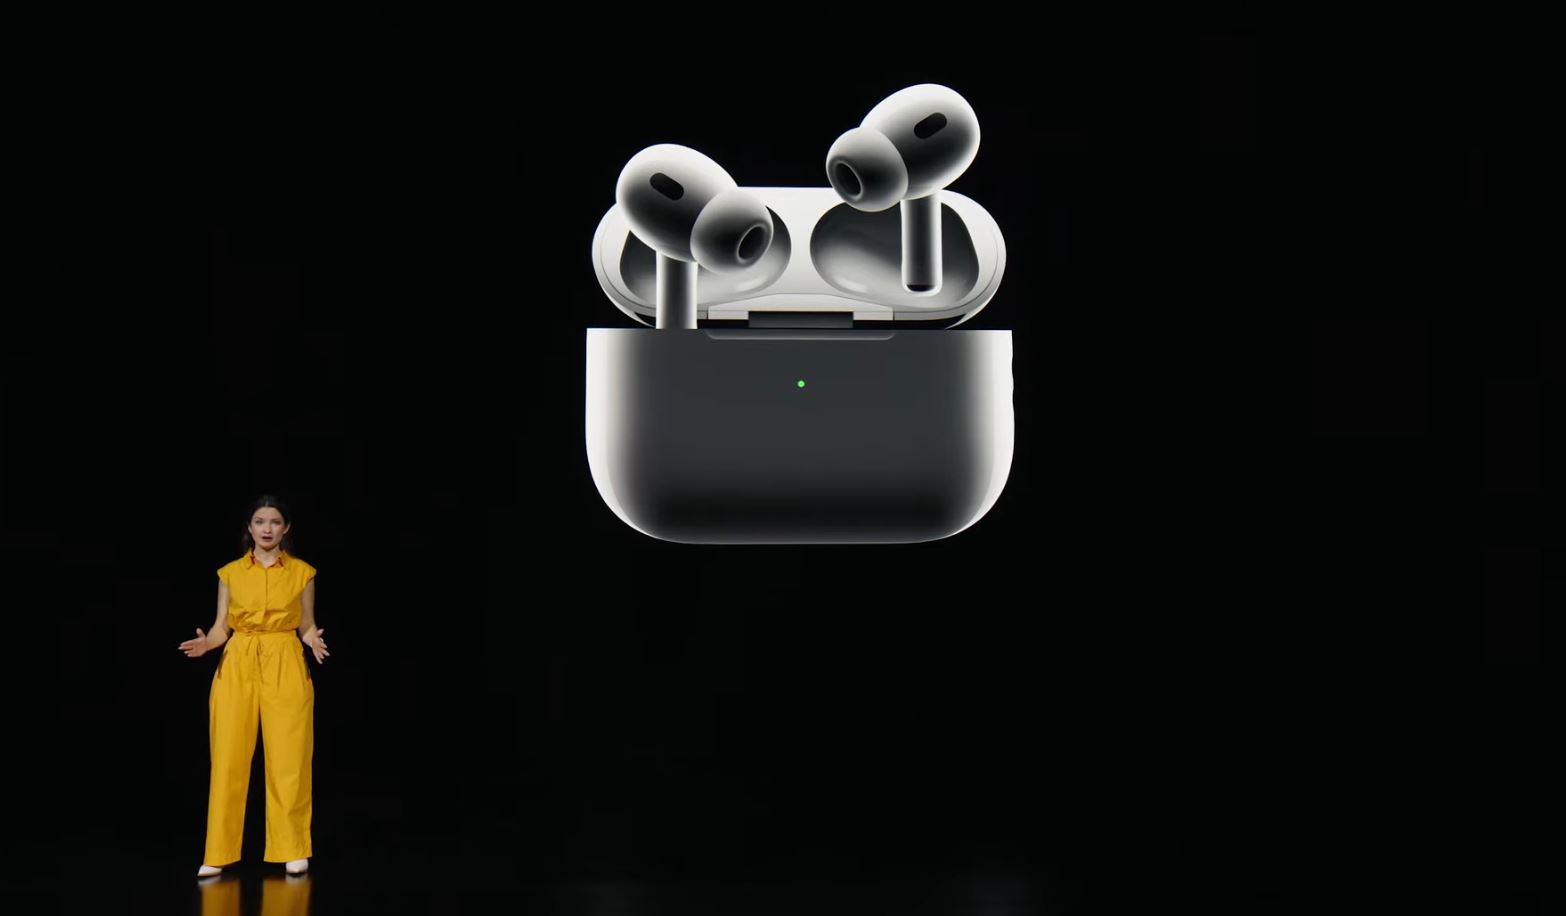 Apple AirPods 2 Pro mit H2-Chip und längerer Akkulaufzeit vorgestellt